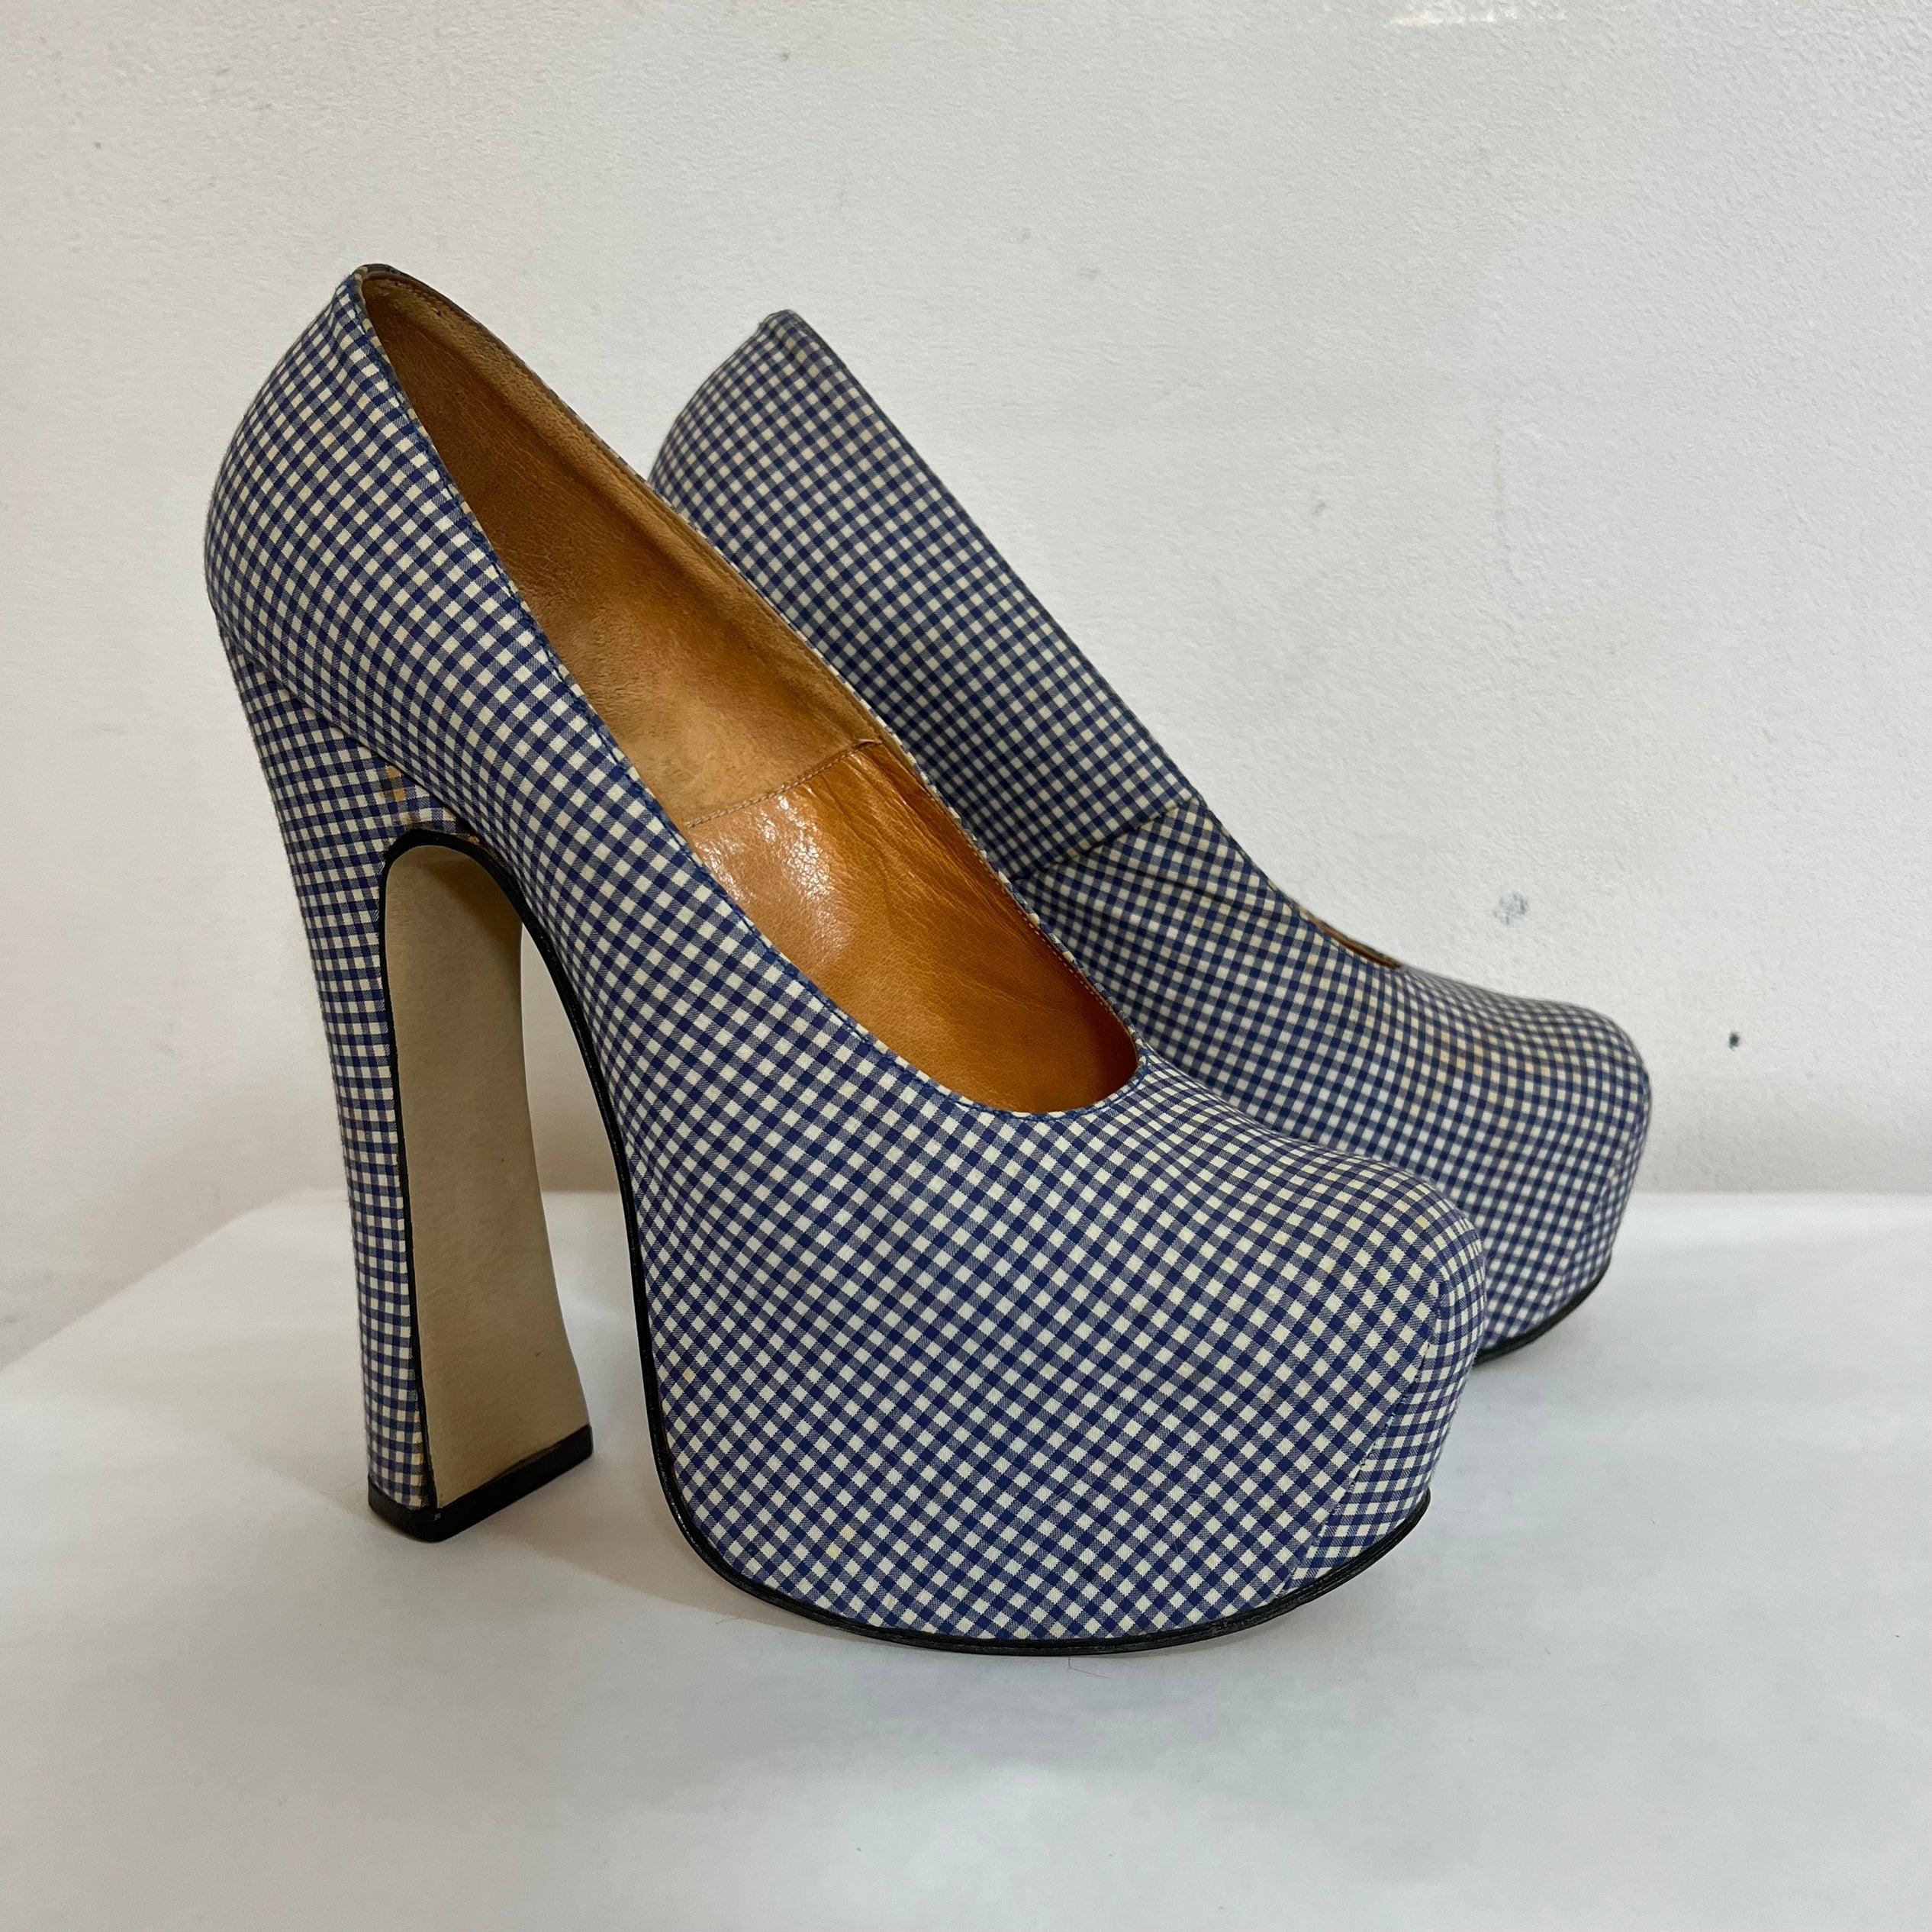 Platform heels 1993 Vivienne Westwood gingham For Sale 3